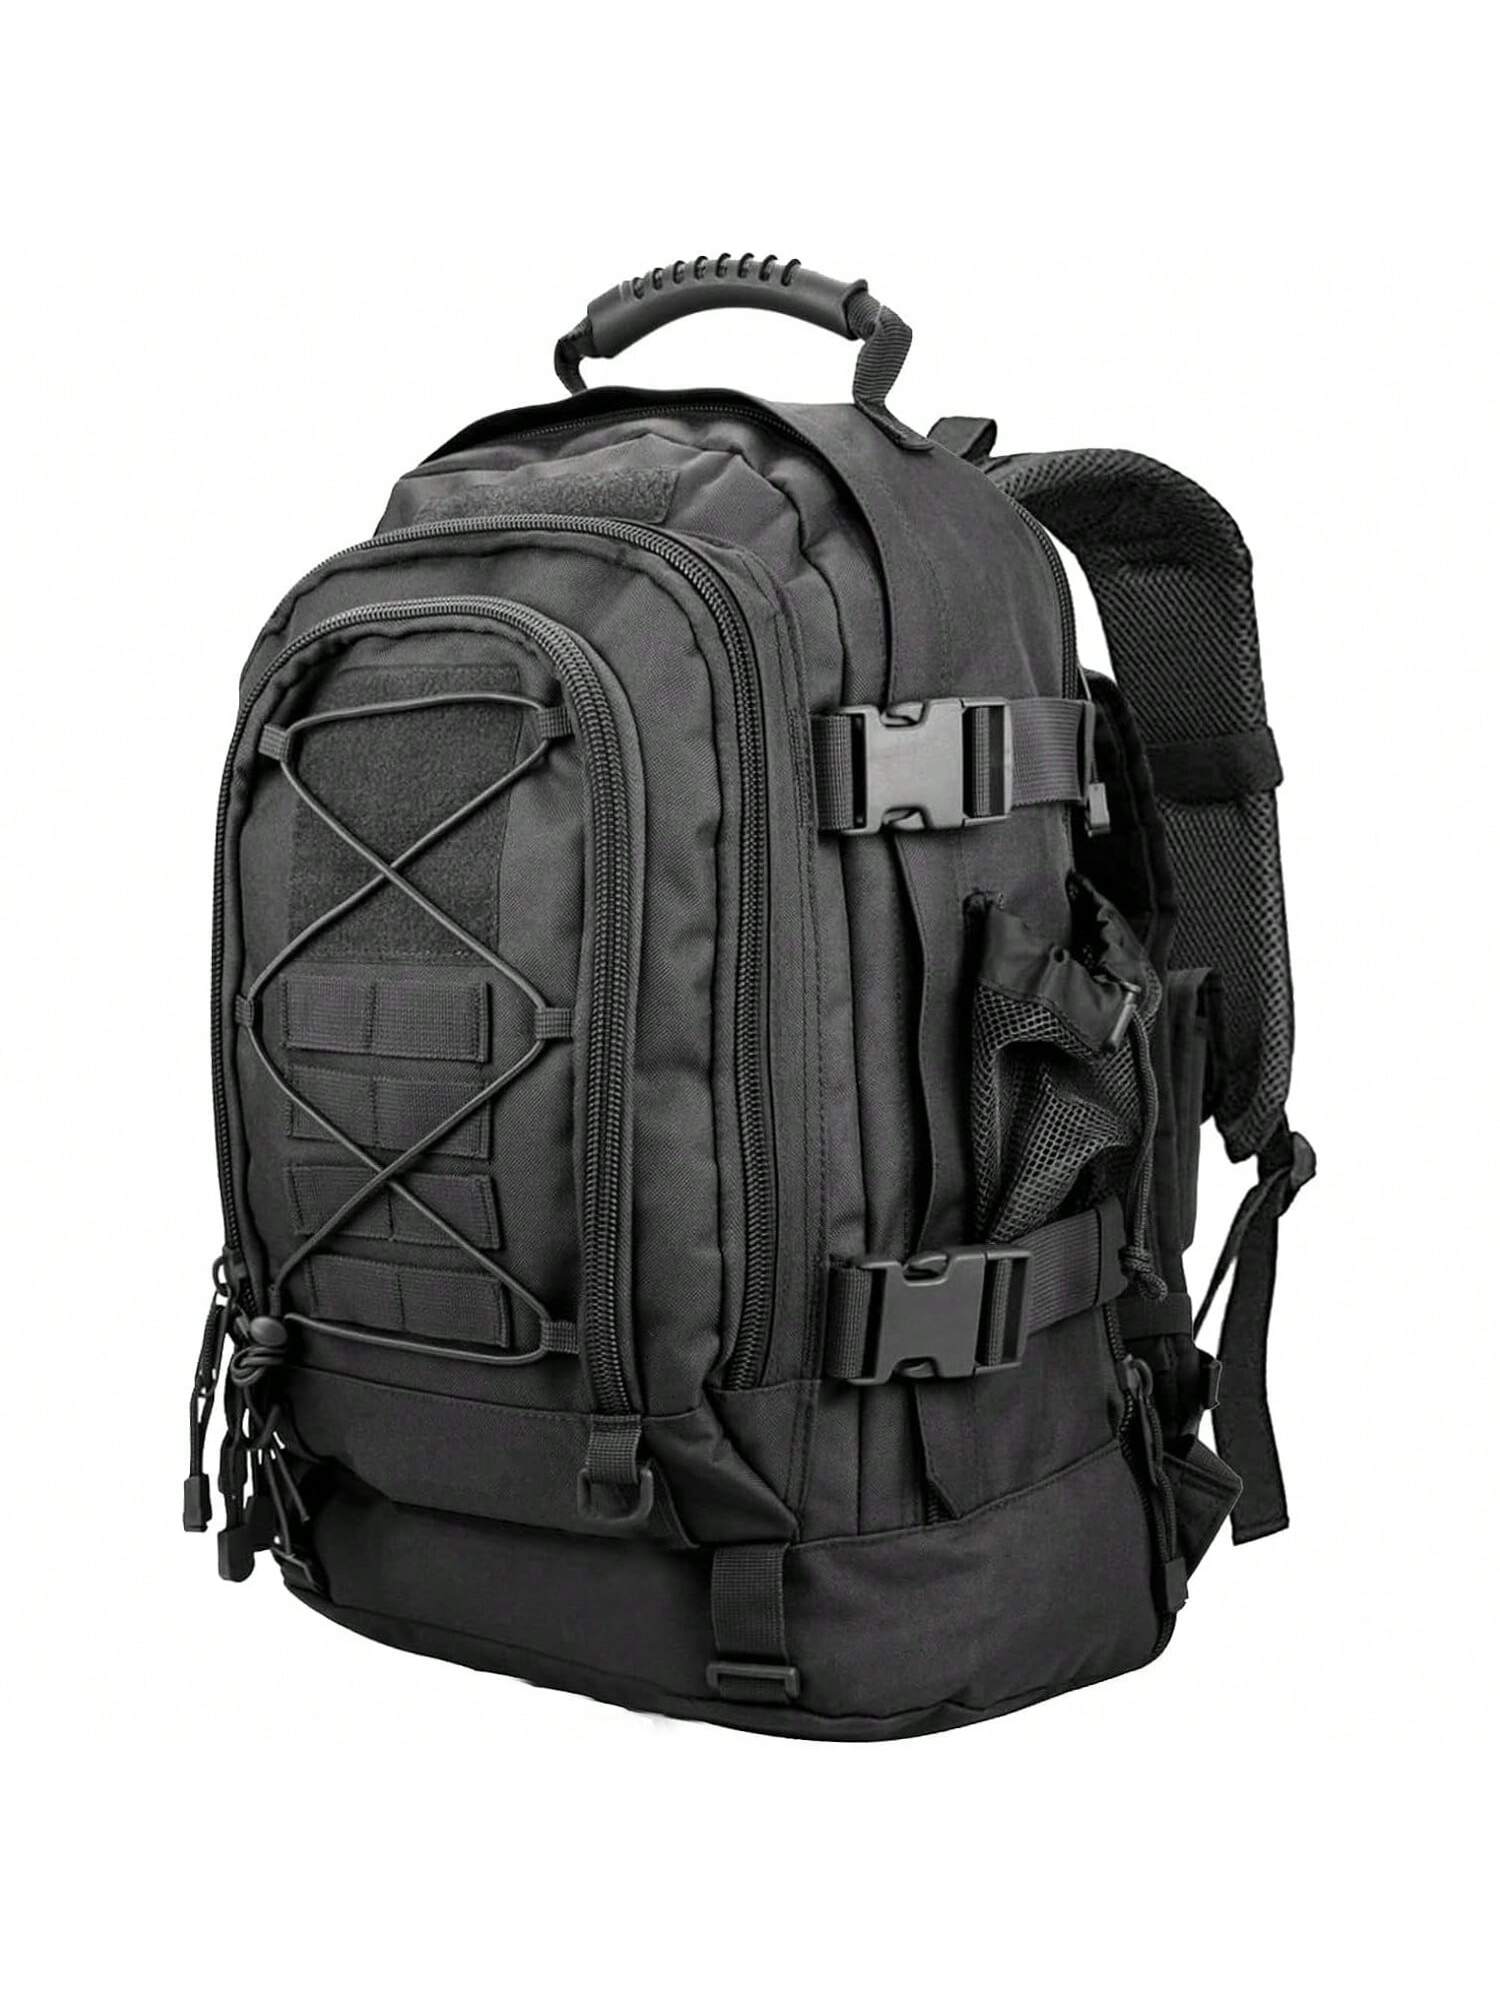 Тактический рюкзак Daypack - Assault Pack для мужчин Рюкзаки Molle Bug Out Bag 3-дневный пакет для пеших прогулок Кемпинг Путешествия Охота Рюкзак Треккинг Черный, черный